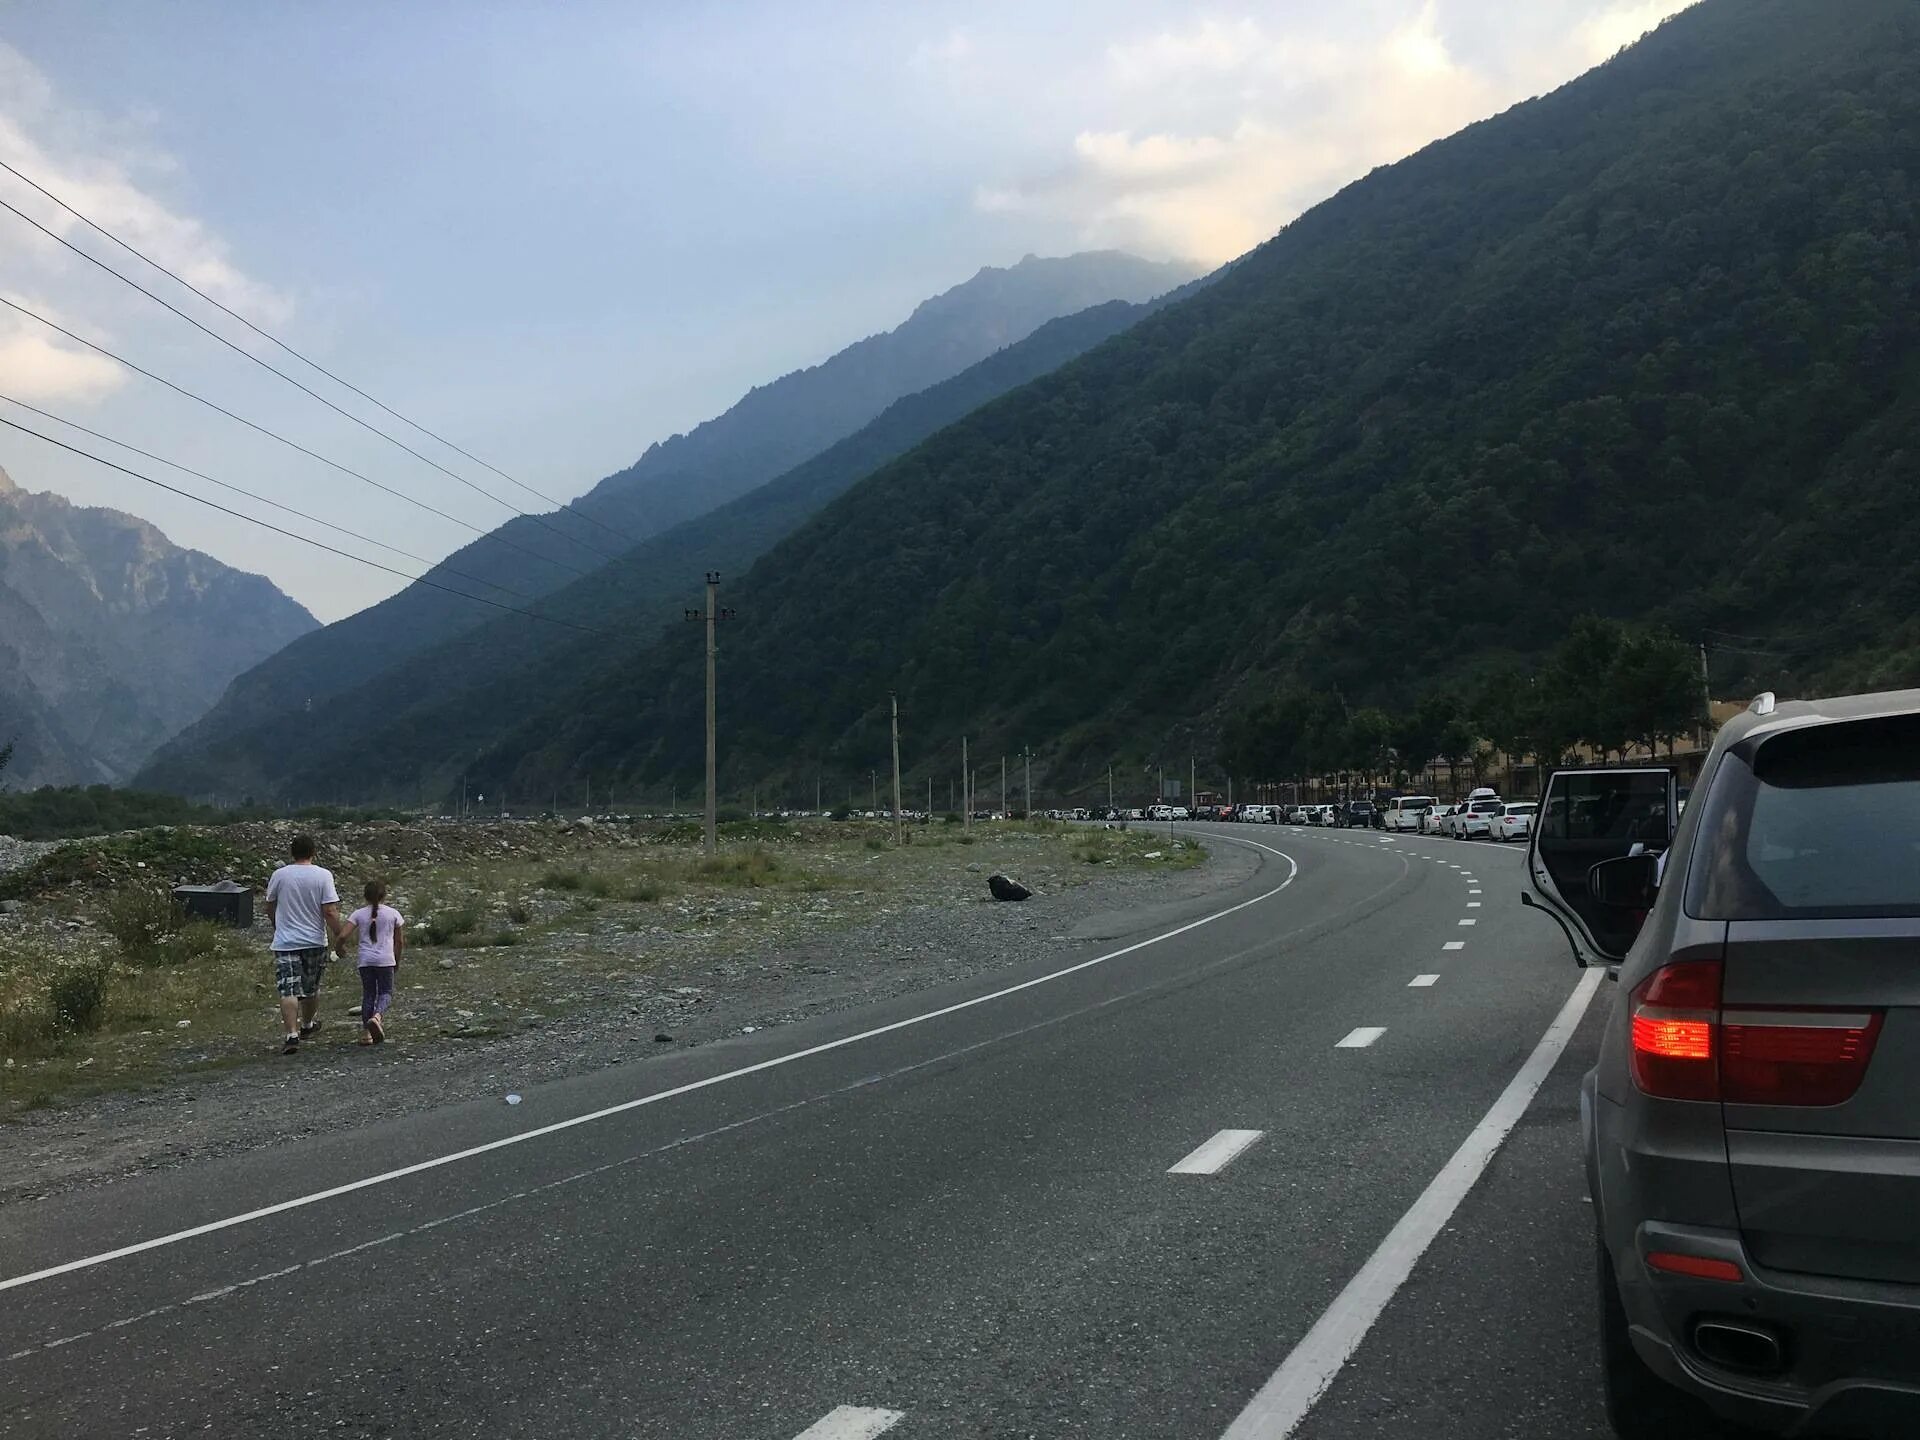 Можно ли в грузию на машине. Дорога в Абхазию. В Грузию через Абхазию. Дорога Абхазия Грузия через горы. Дорога в Грузию на машине через Абхазию.